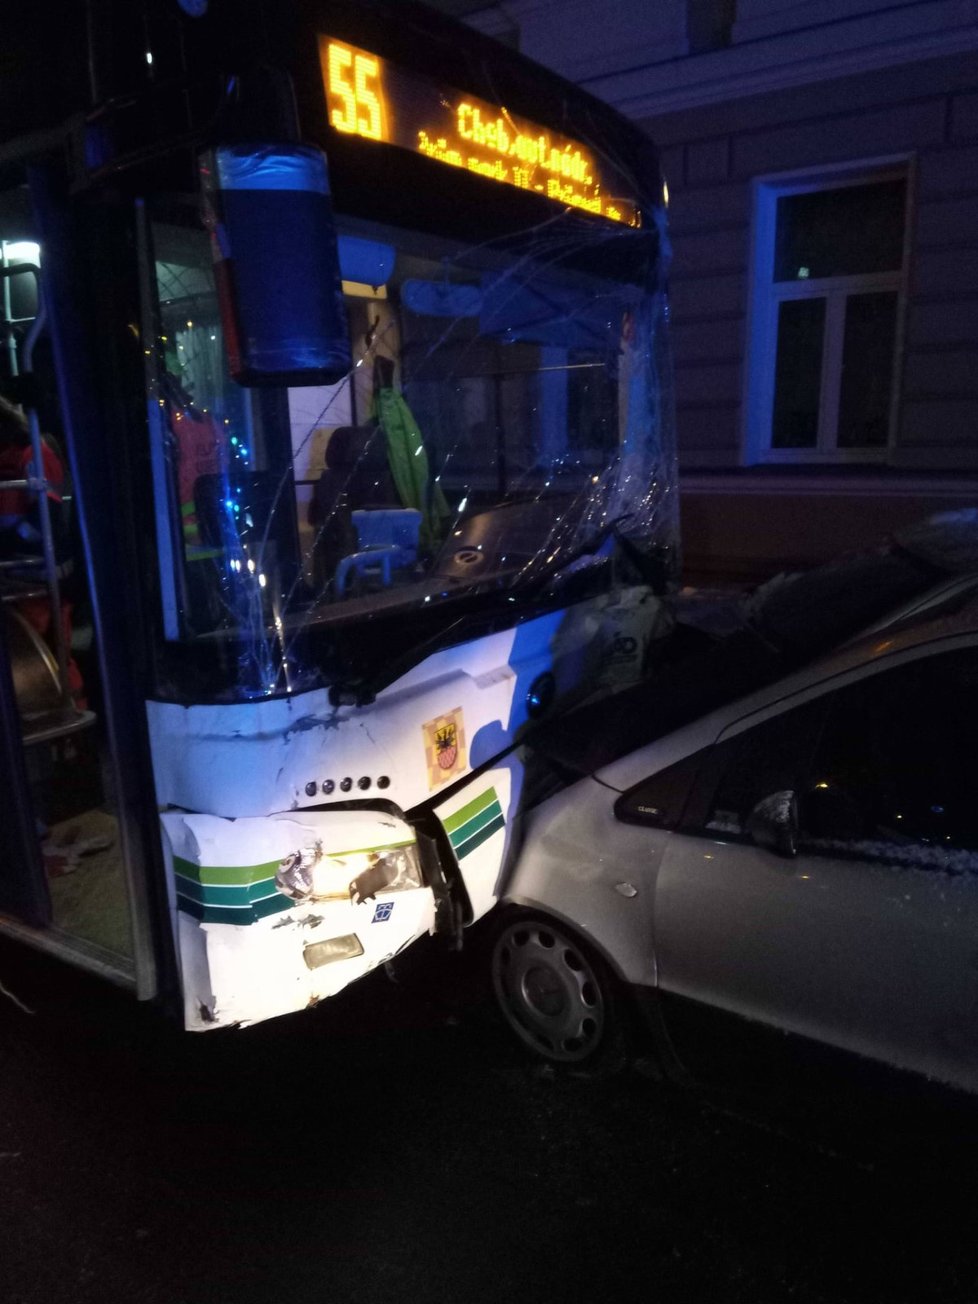 Autobus v Chebu naboural do 11 zaparkovaných aut.